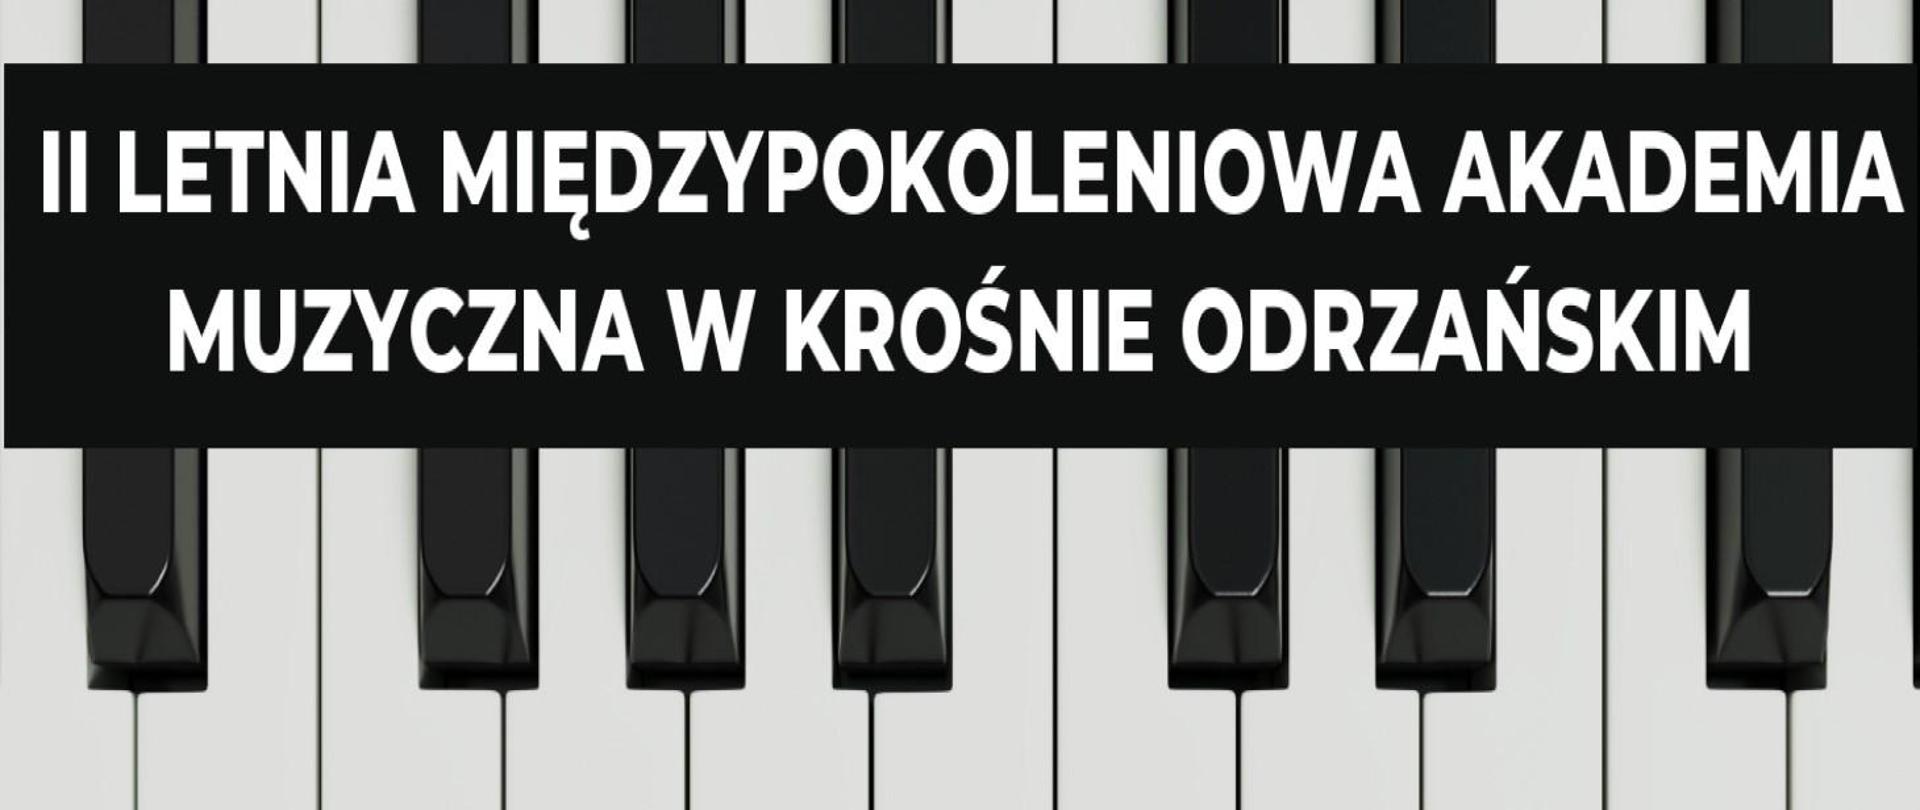 Na klawiaturze fortepianu na czarnym prostokącie znajduje się napis II Letnia Międzypokoleniowa Akademia Muzyczna w Krośnie Odrzańskim.
